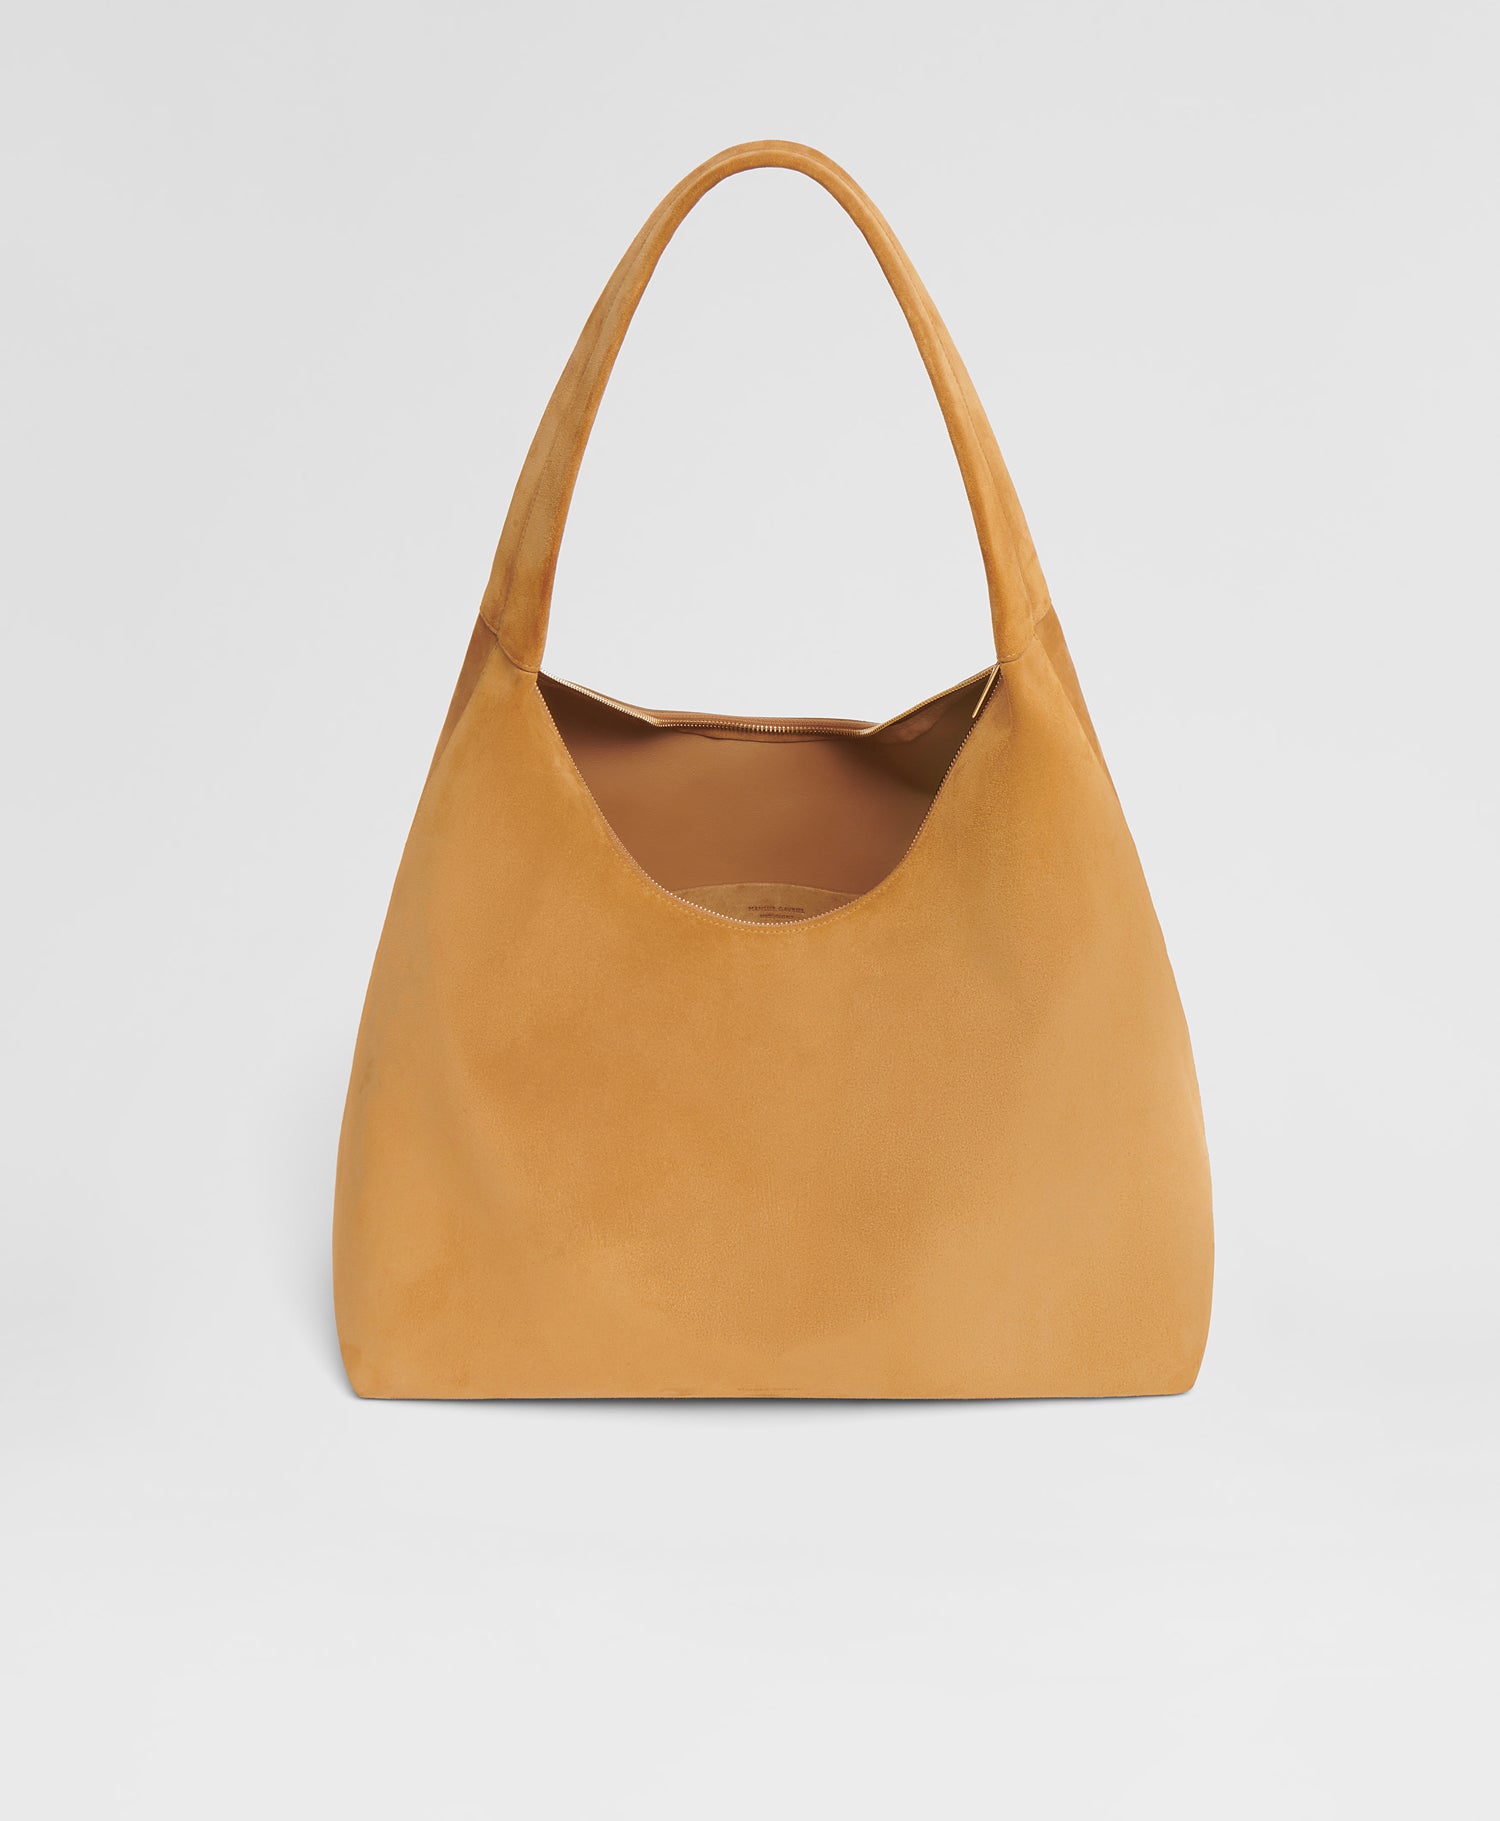 Pre-owned Luxury Handbags - Shop Used Designer Bags